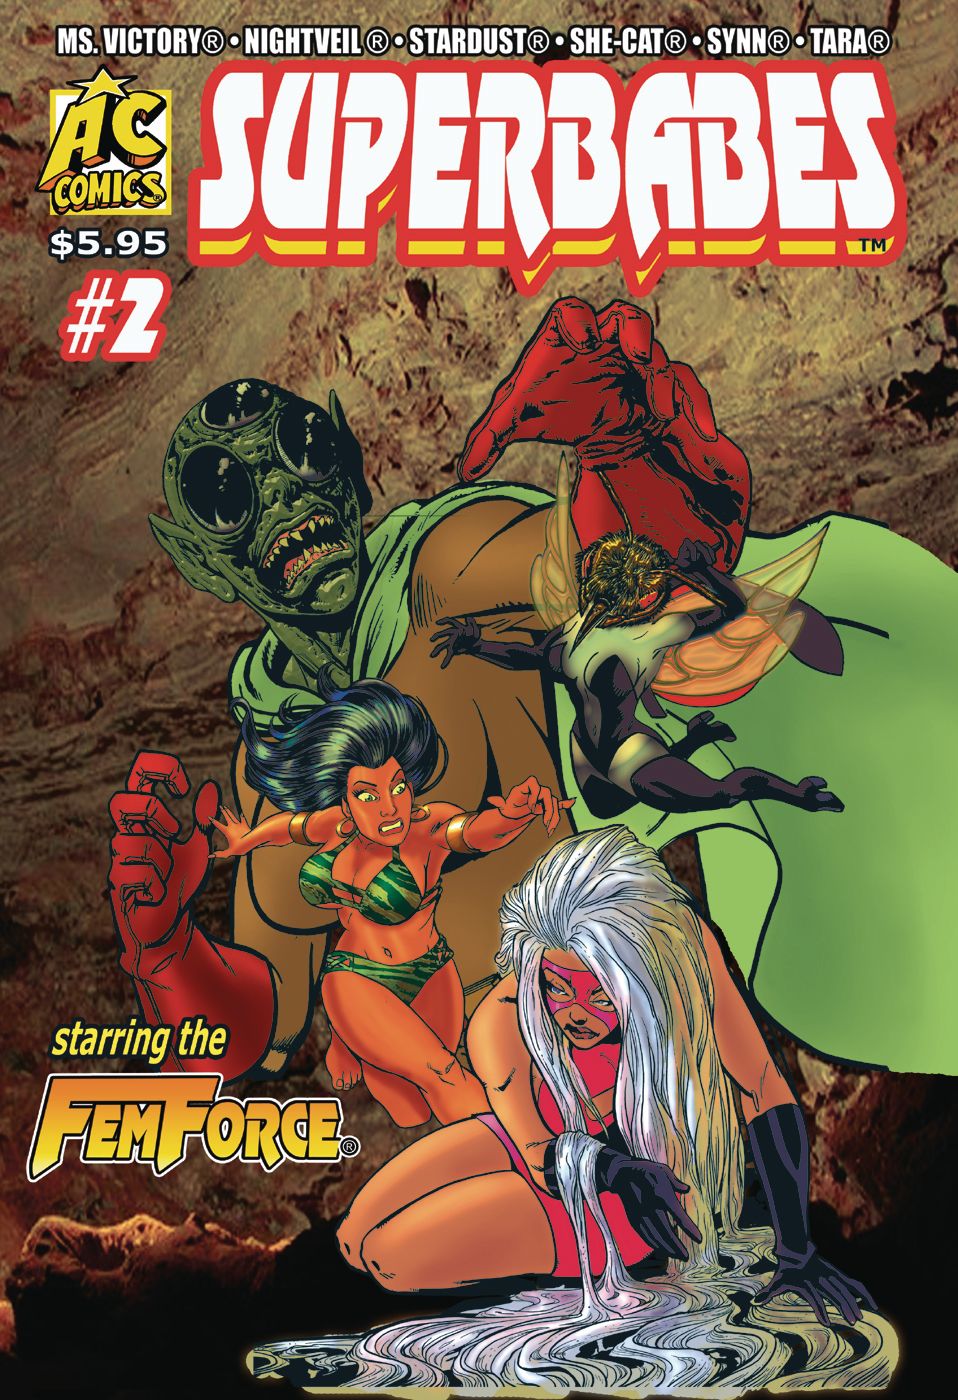 Superbabes Starring Femforce #2 Comic